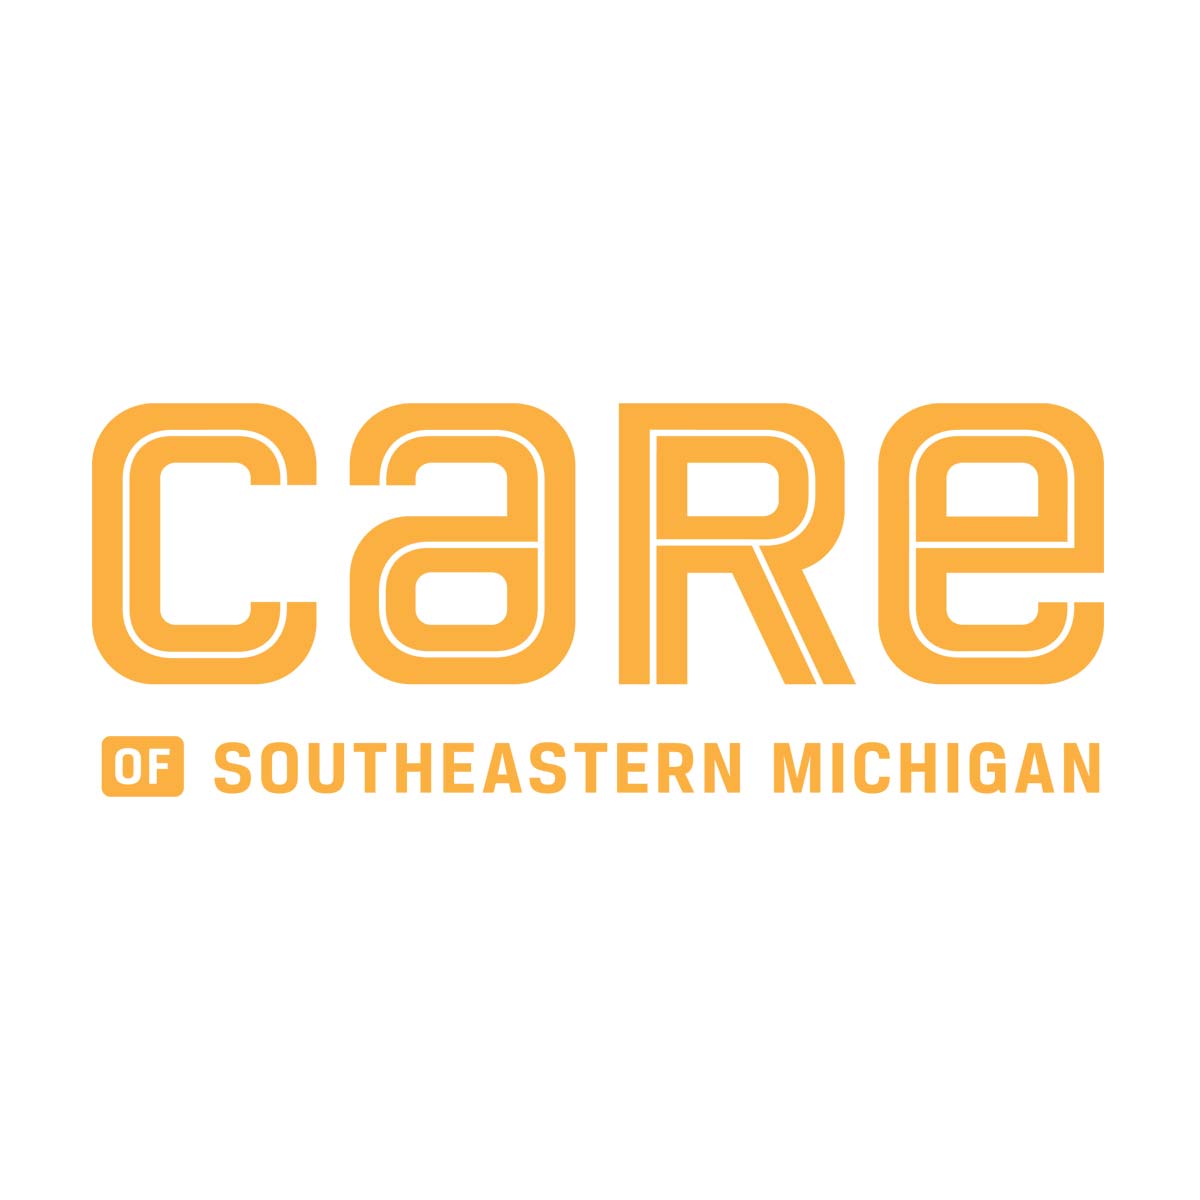 Care of Southeastern Michigan square logo